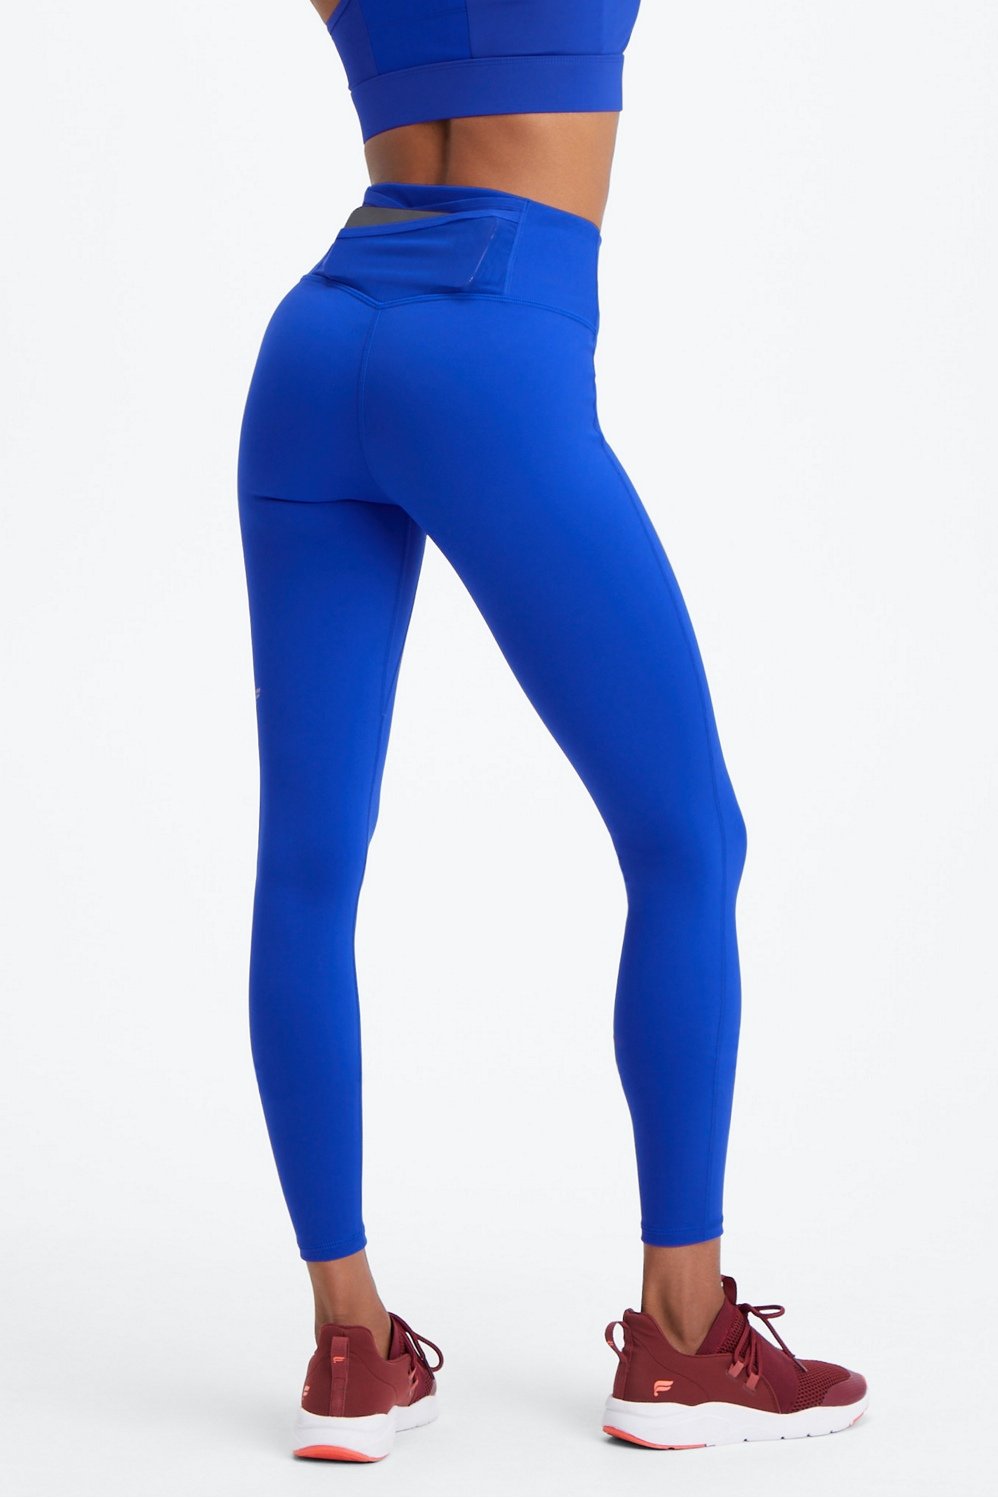 Athena Gym Leggings - Light Blue - Fit Boutique